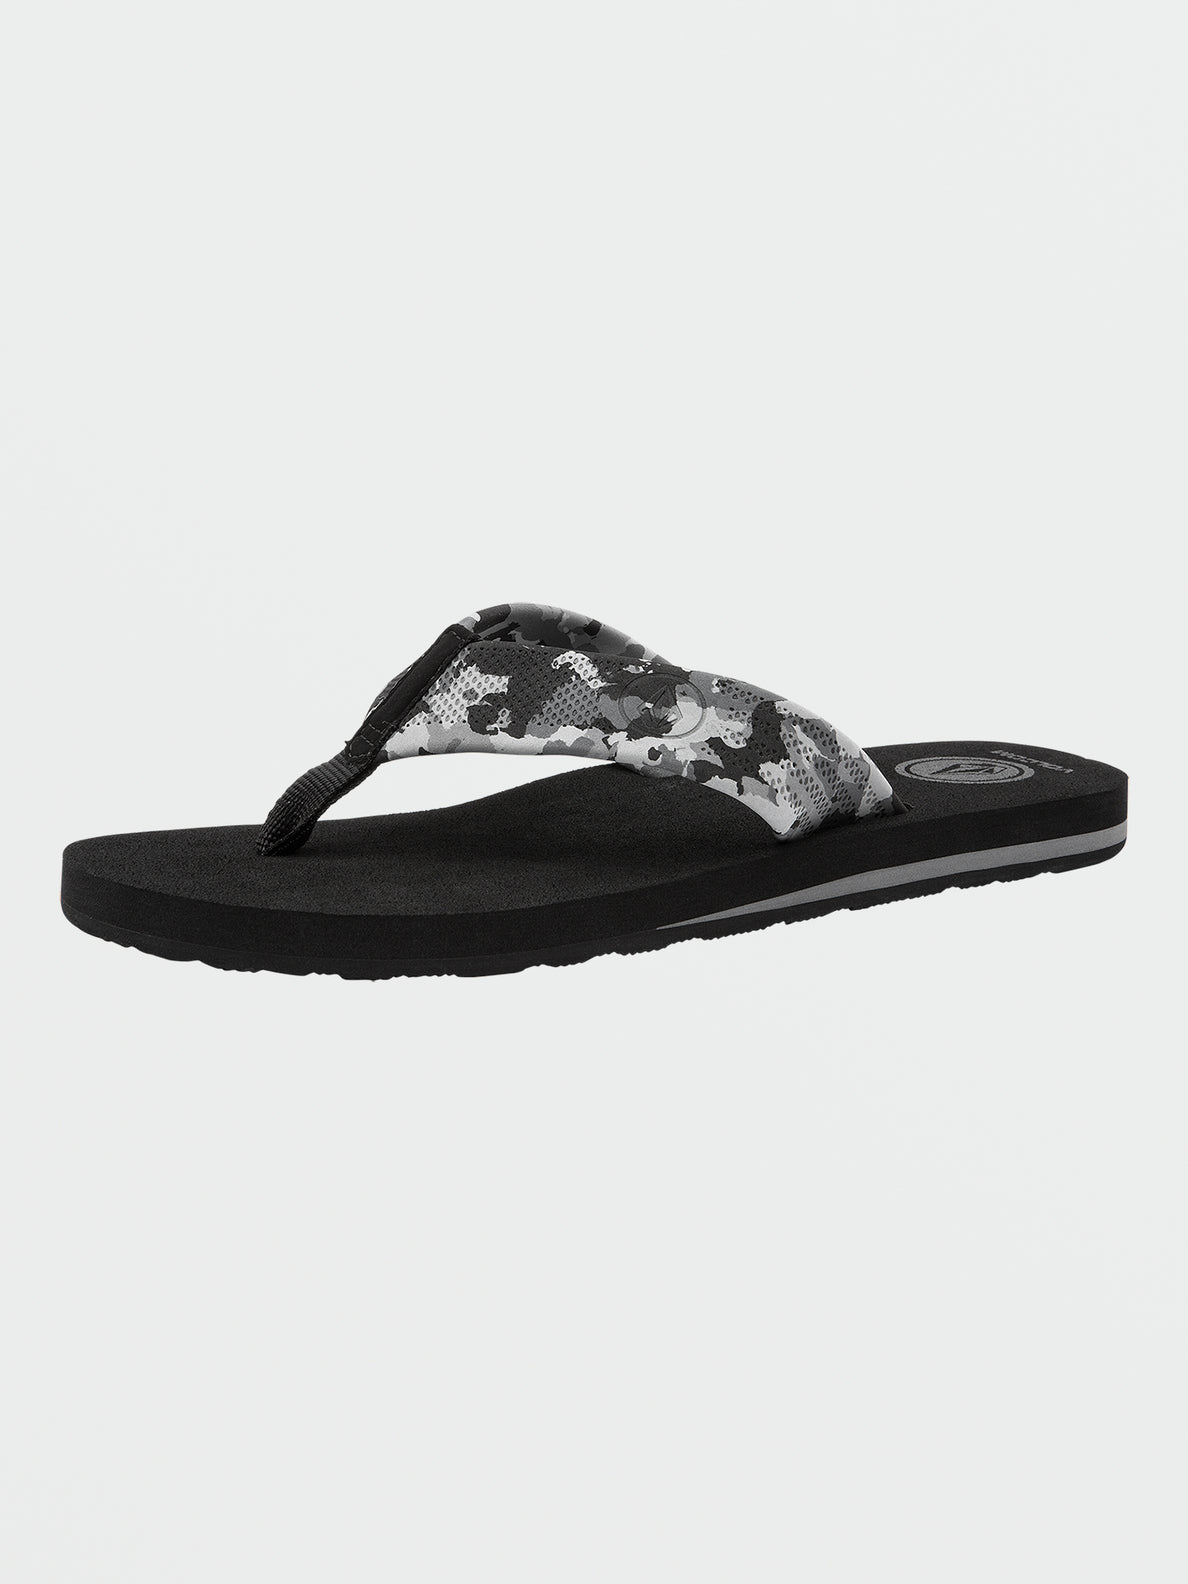 Daycation Sandals - Camoflauge (V0812352_CAM) [1]